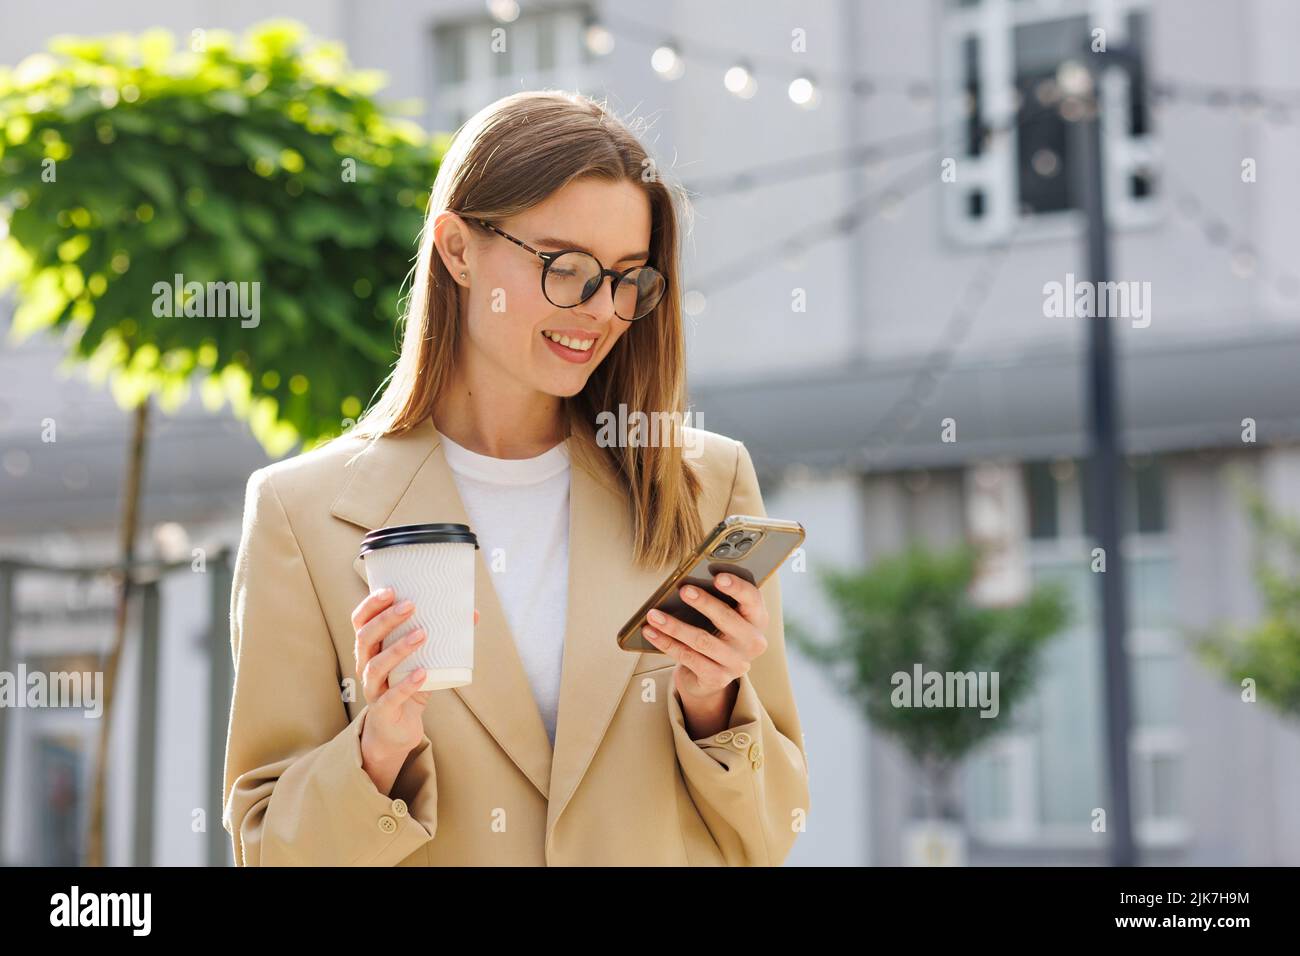 Una joven rubia contra el telón de fondo de un centro de negocios, centro de oficinas. Retrato de un inicio correcto. Smartphone, café traje casual. Foto de stock